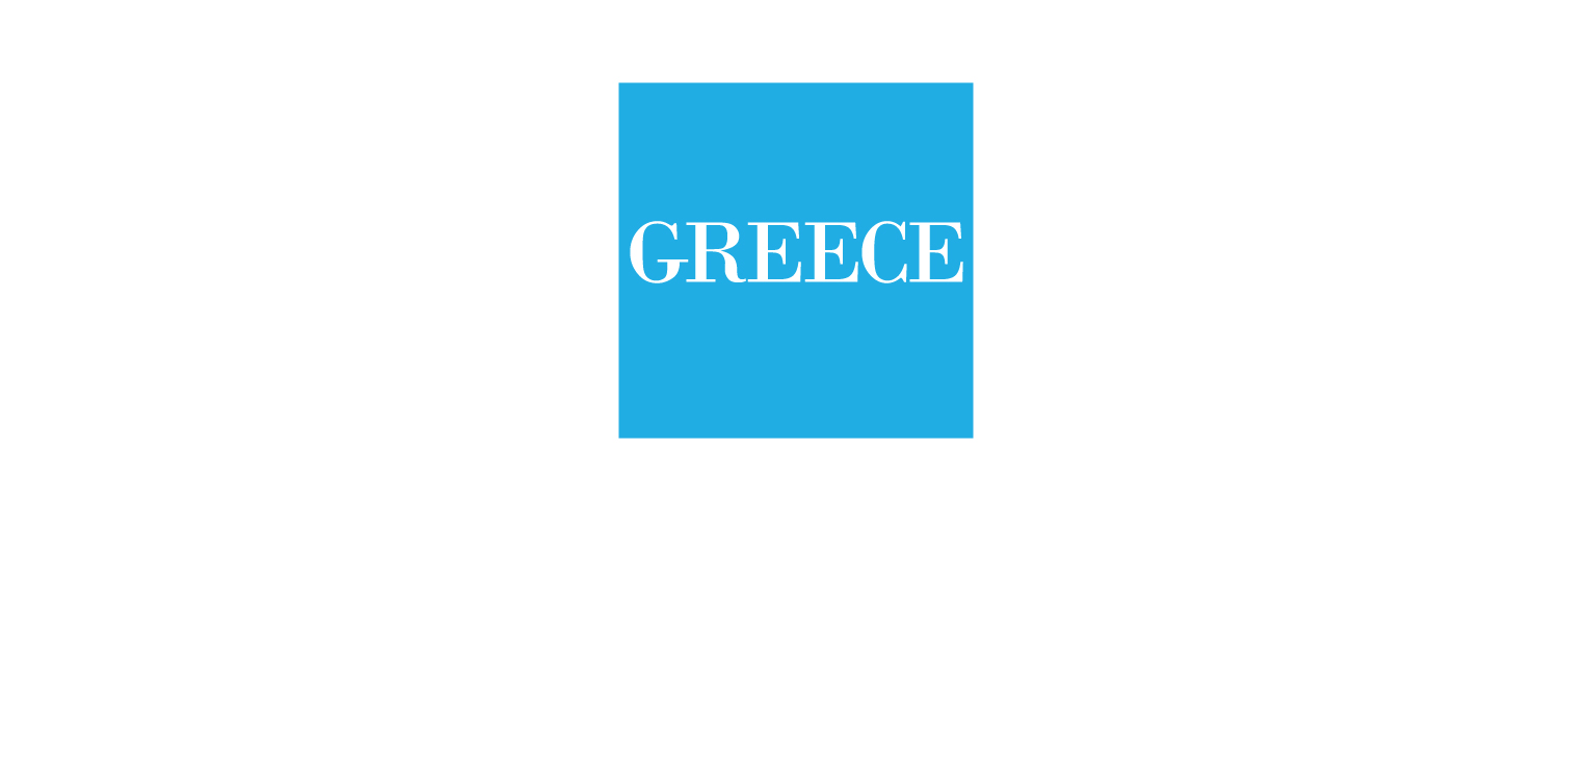 Greece logos